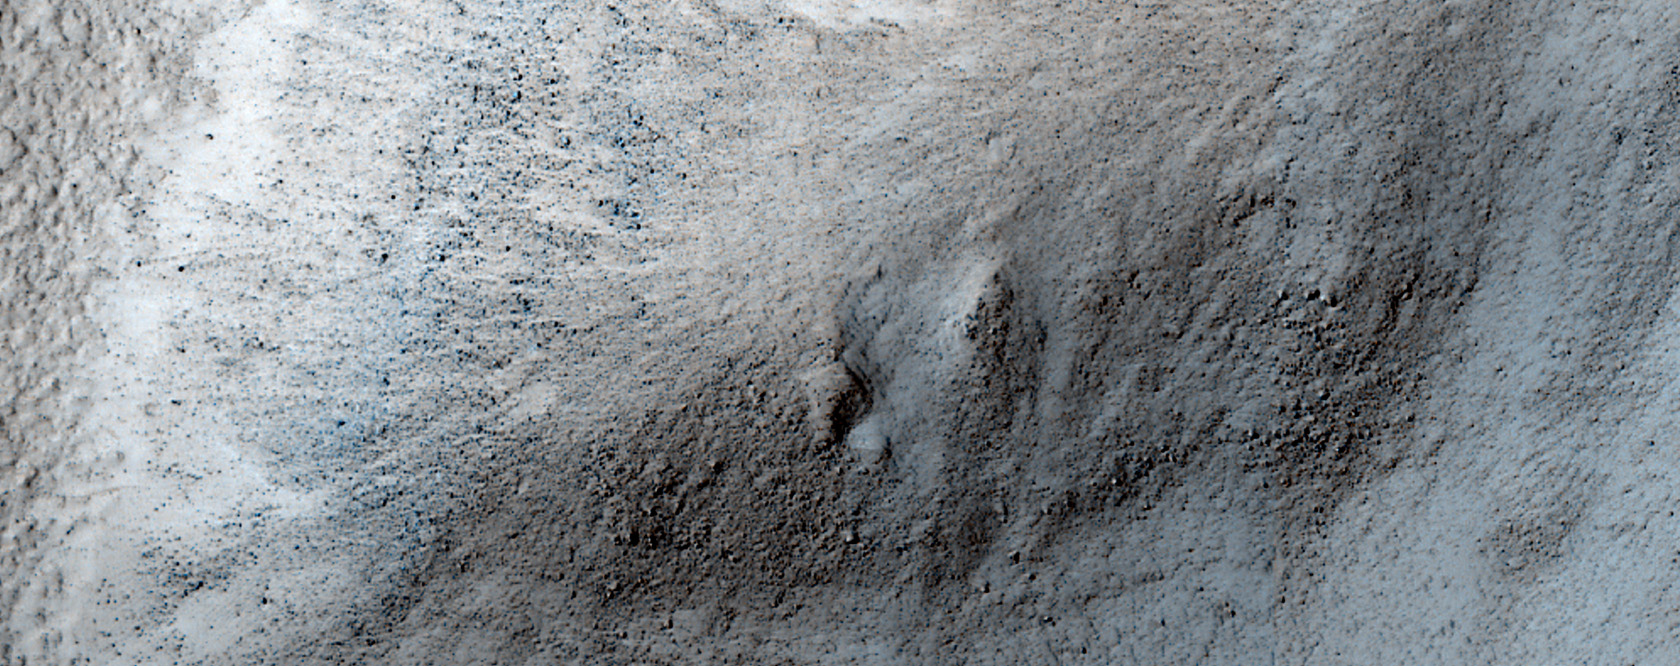 Debris from a Former Martian Glacier